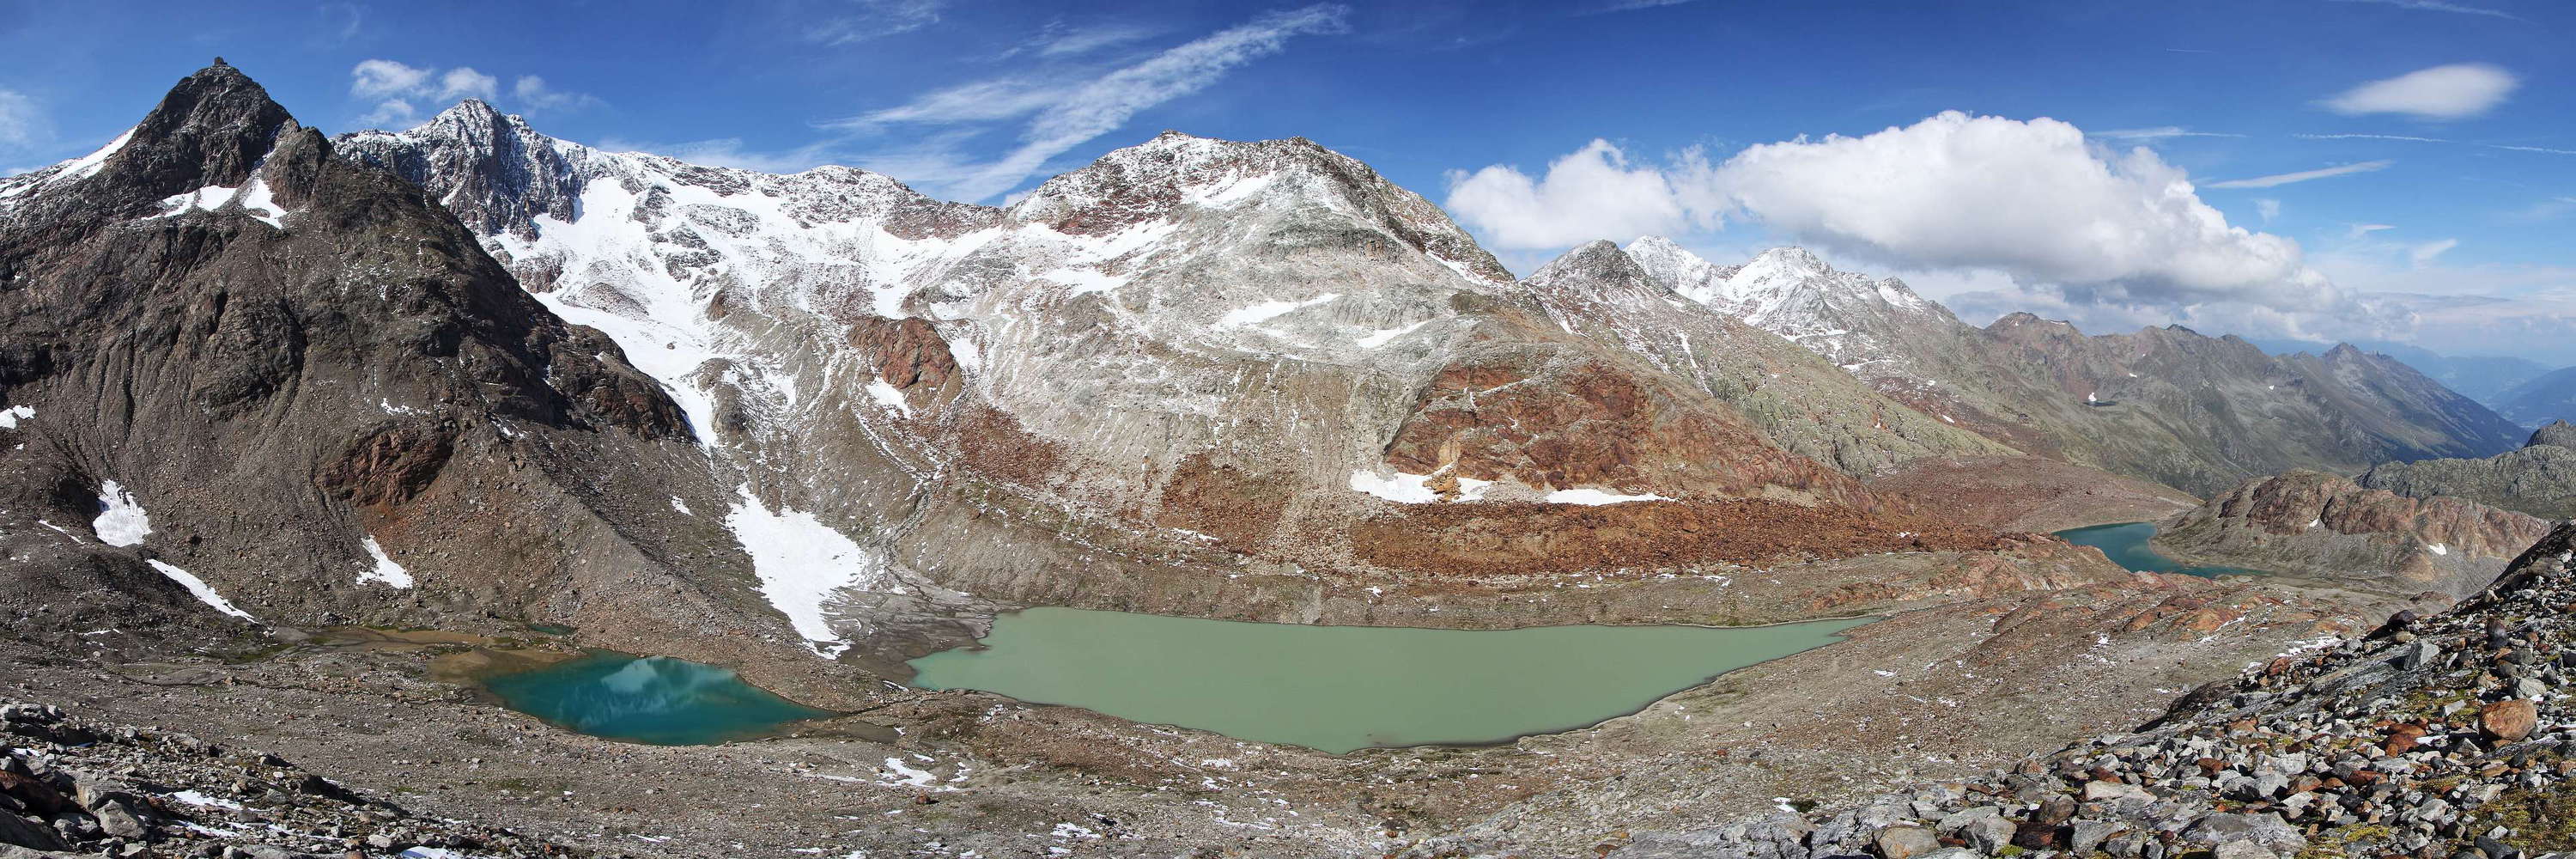 Ridnaun Valley | Panorama of glacial lakes